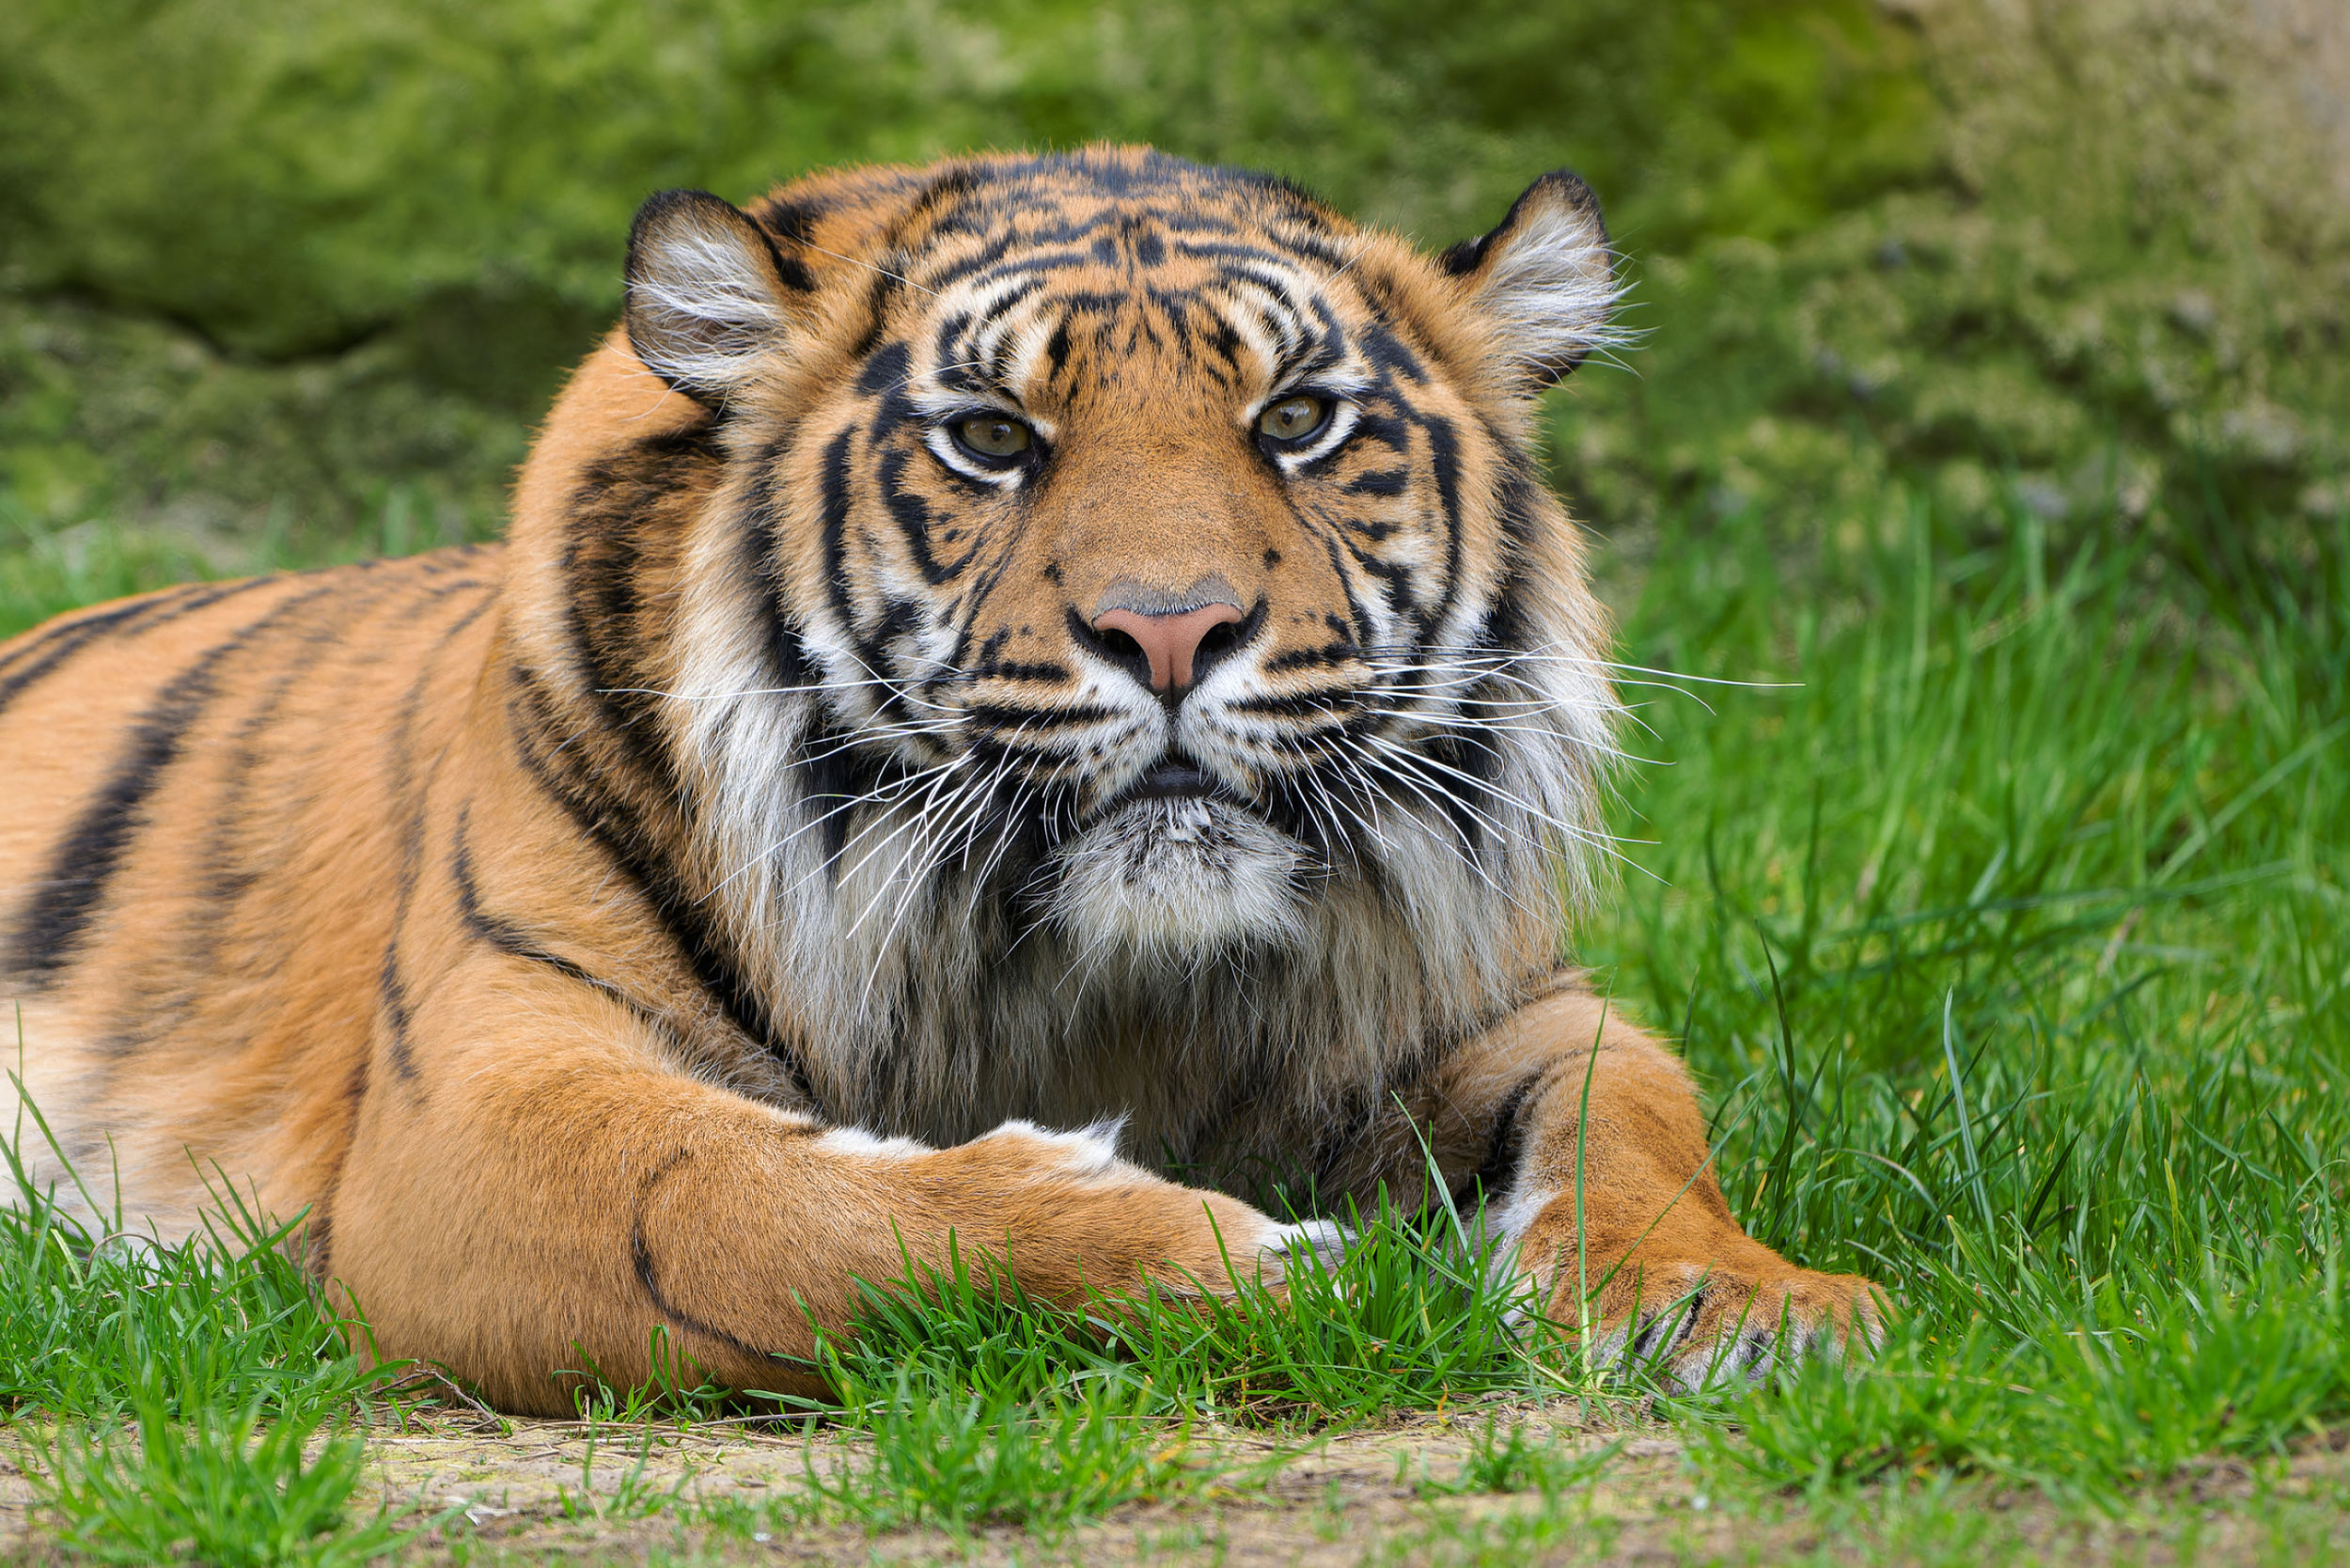 Samice tygra sumaterského Surya si aktuální teploty užívá ve venkovním výběhu Pavilonu šelem a plazů v dolní části zoo. Foto Petr Hamerník, Zoo Praha